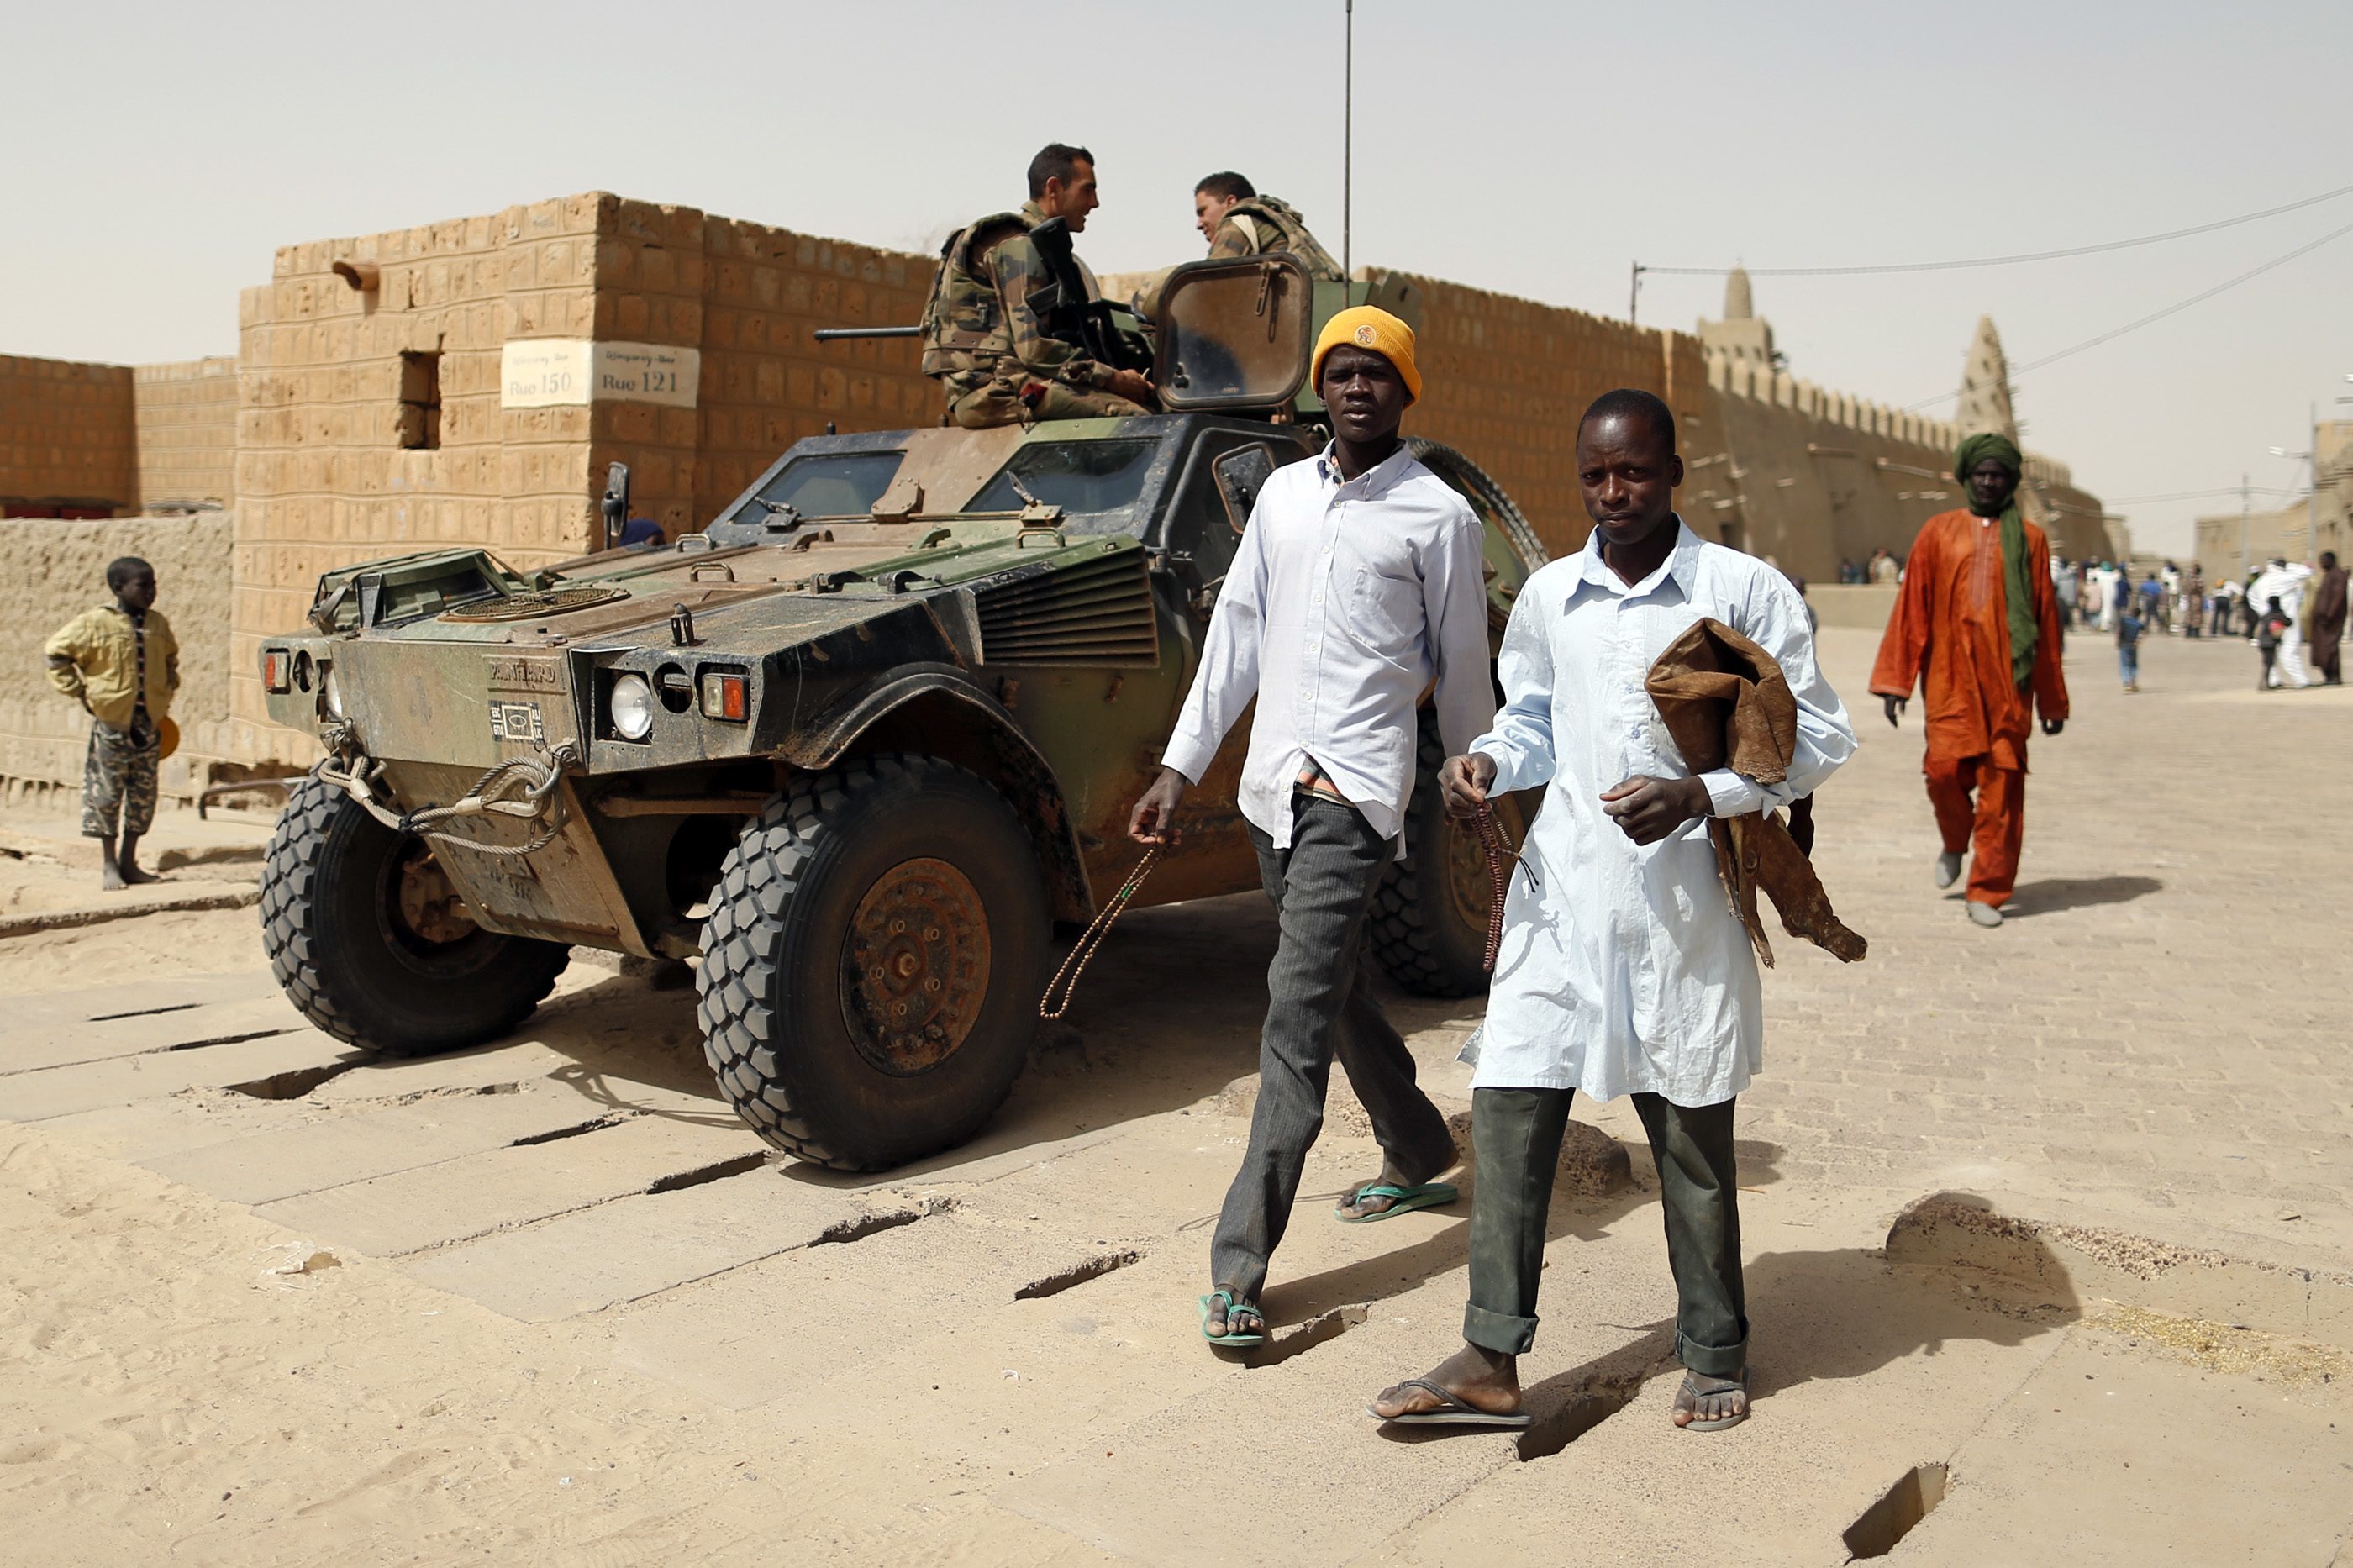 Μέχρι τον Απρίλιο θα έχει ολοκληρωθεί η επιχείρηση του γαλλικού στρατού στο Μάλι